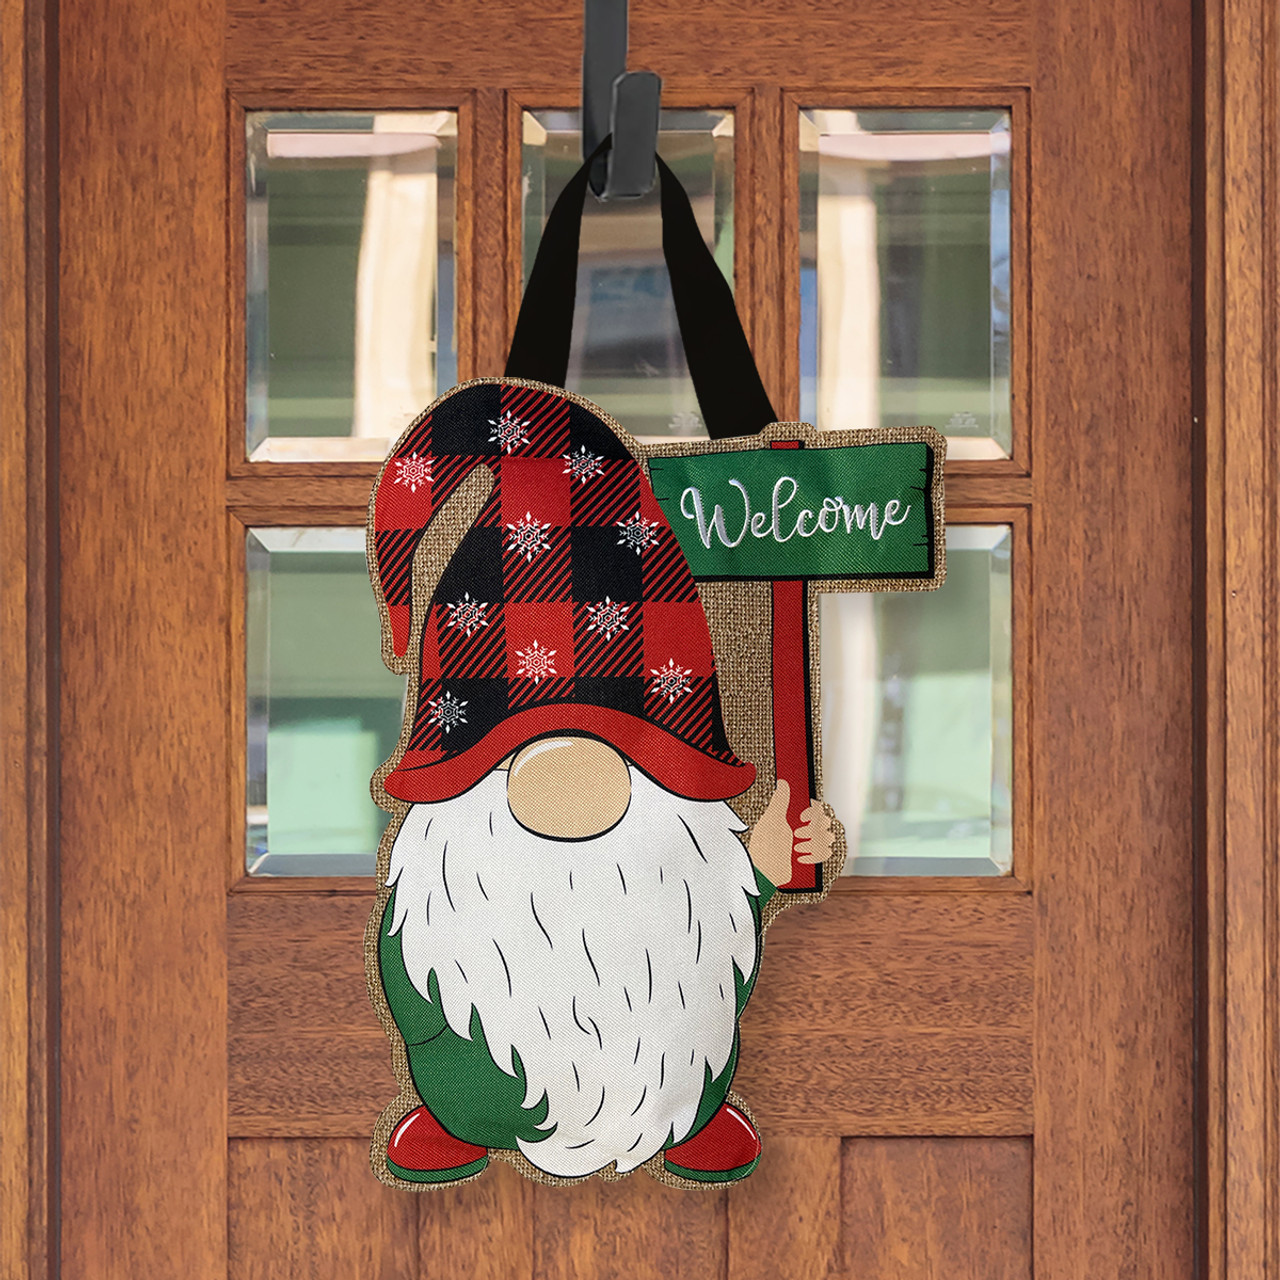 Winter Gnome Coir Doormat 30 x 18 Indoor Outdoor Briarwood Lane